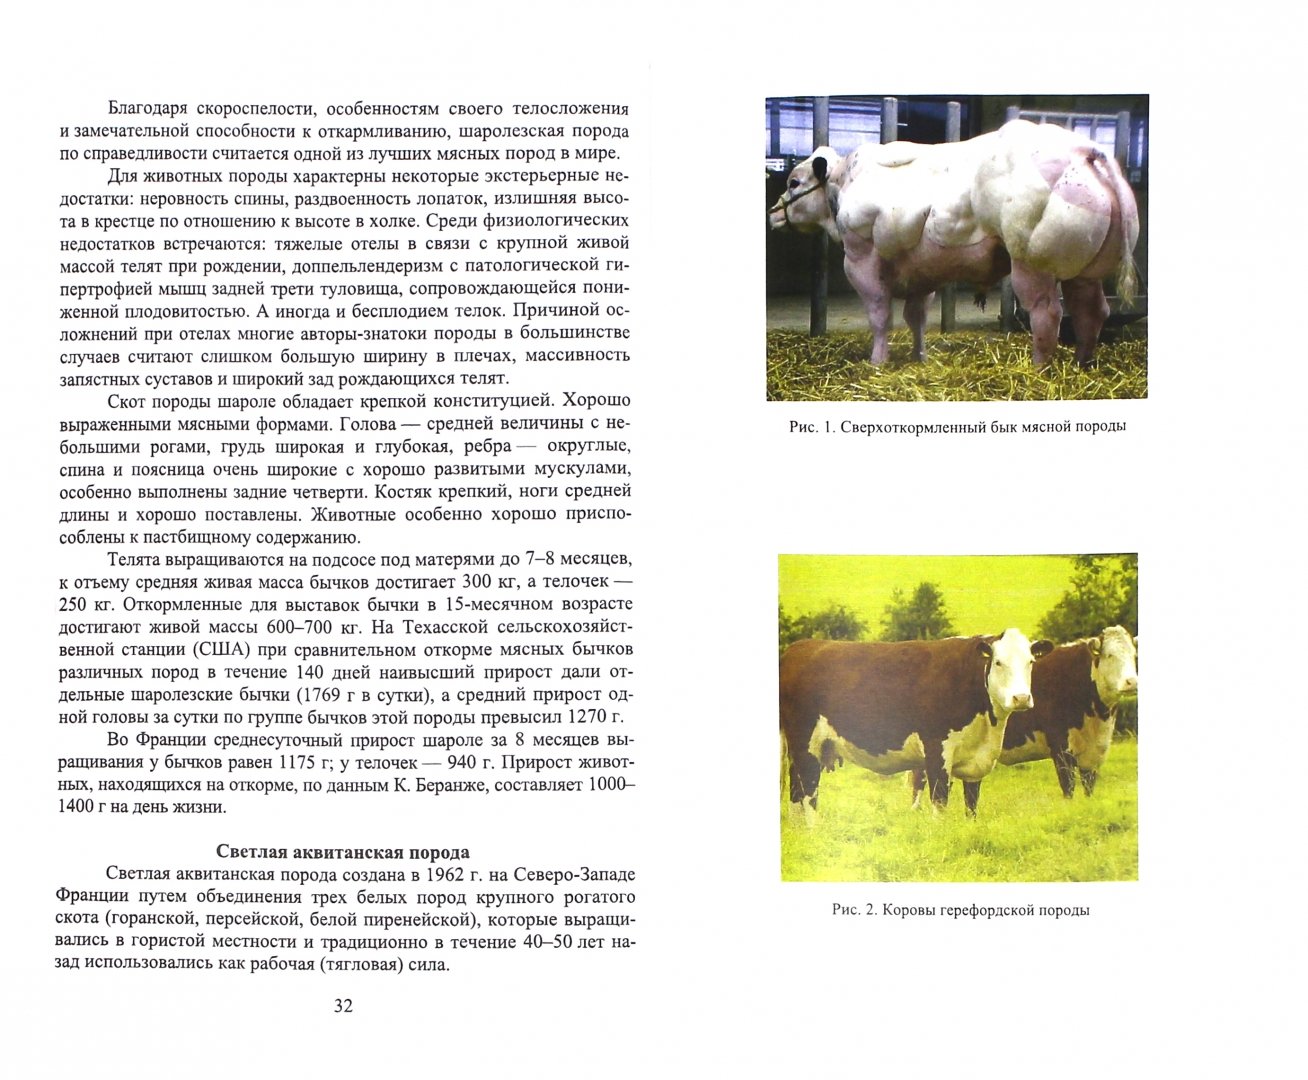 Иллюстрация 1 из 4 для Мясные породы крупного рогатого скота. Учебное пособие - Егор Лебедько | Лабиринт - книги. Источник: Лабиринт